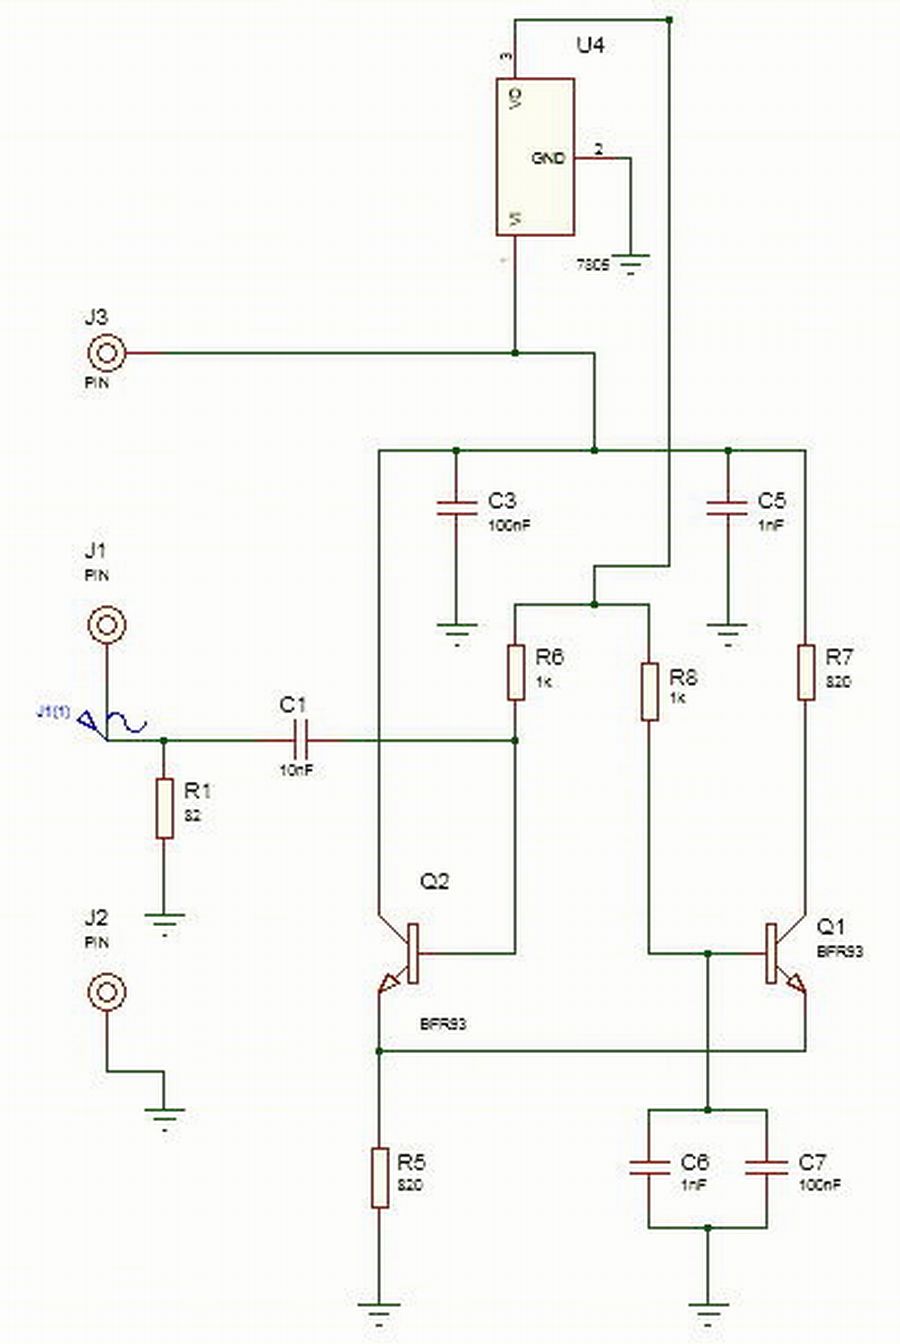 Amp_schematic.JPG